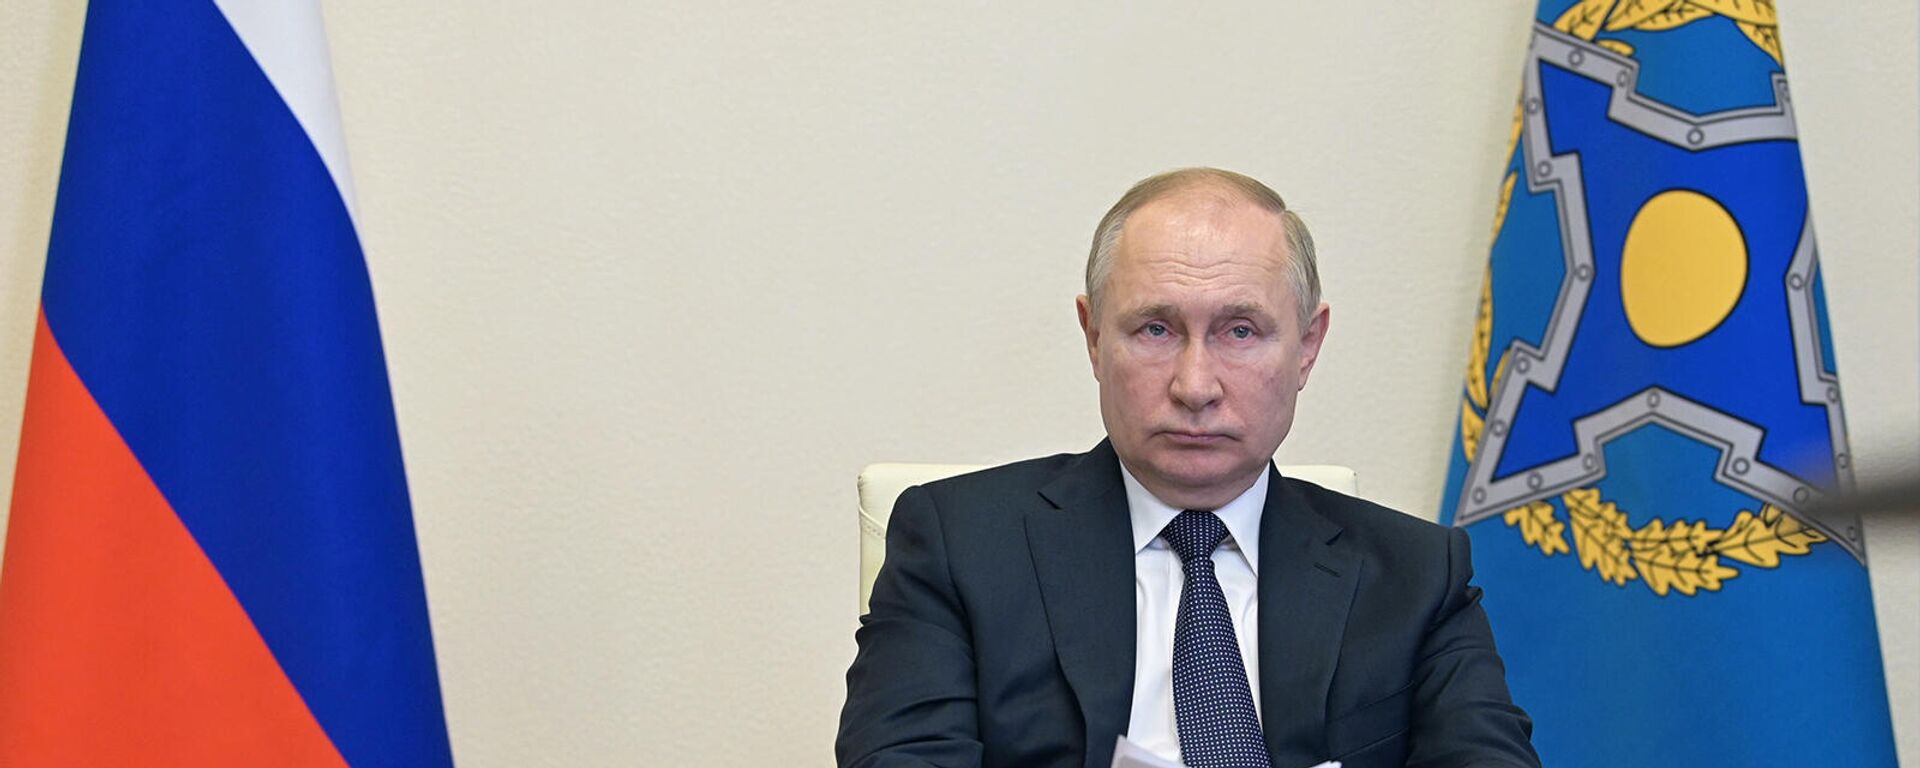 Ռուսաստանի նախագահ Վլադիմիր Պուտնիկը՝ ՀԱՊԿ-ի անդամ պետությունների ղեկավարների առցանց նիստում (10 հունվարի, 2022թ)․ Մոսկվա - Sputnik Արմենիա, 1920, 10.01.2022